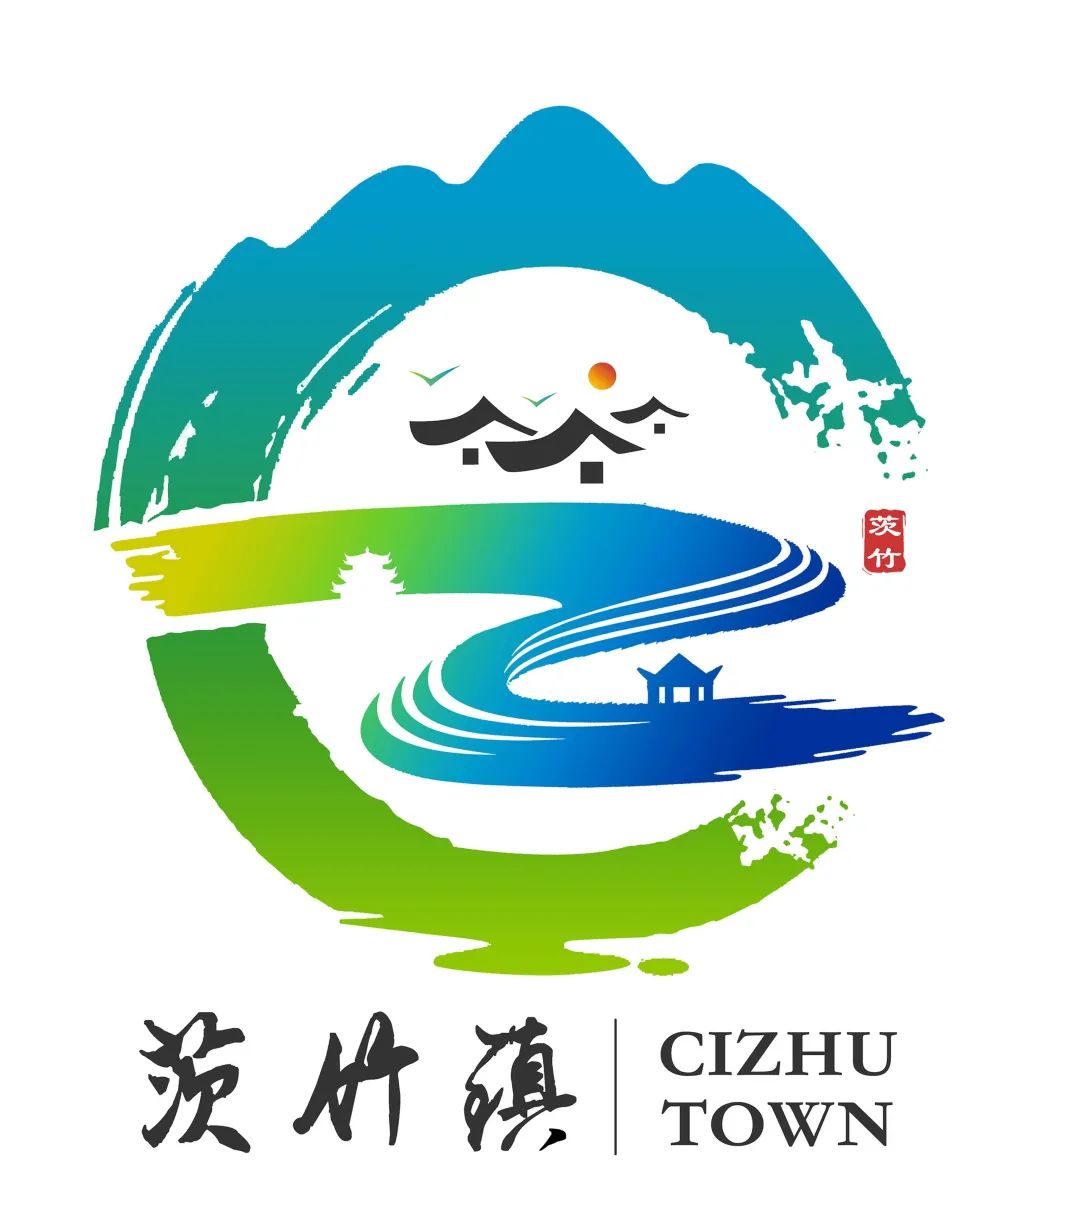 茨竹镇logo设计方案征集投票